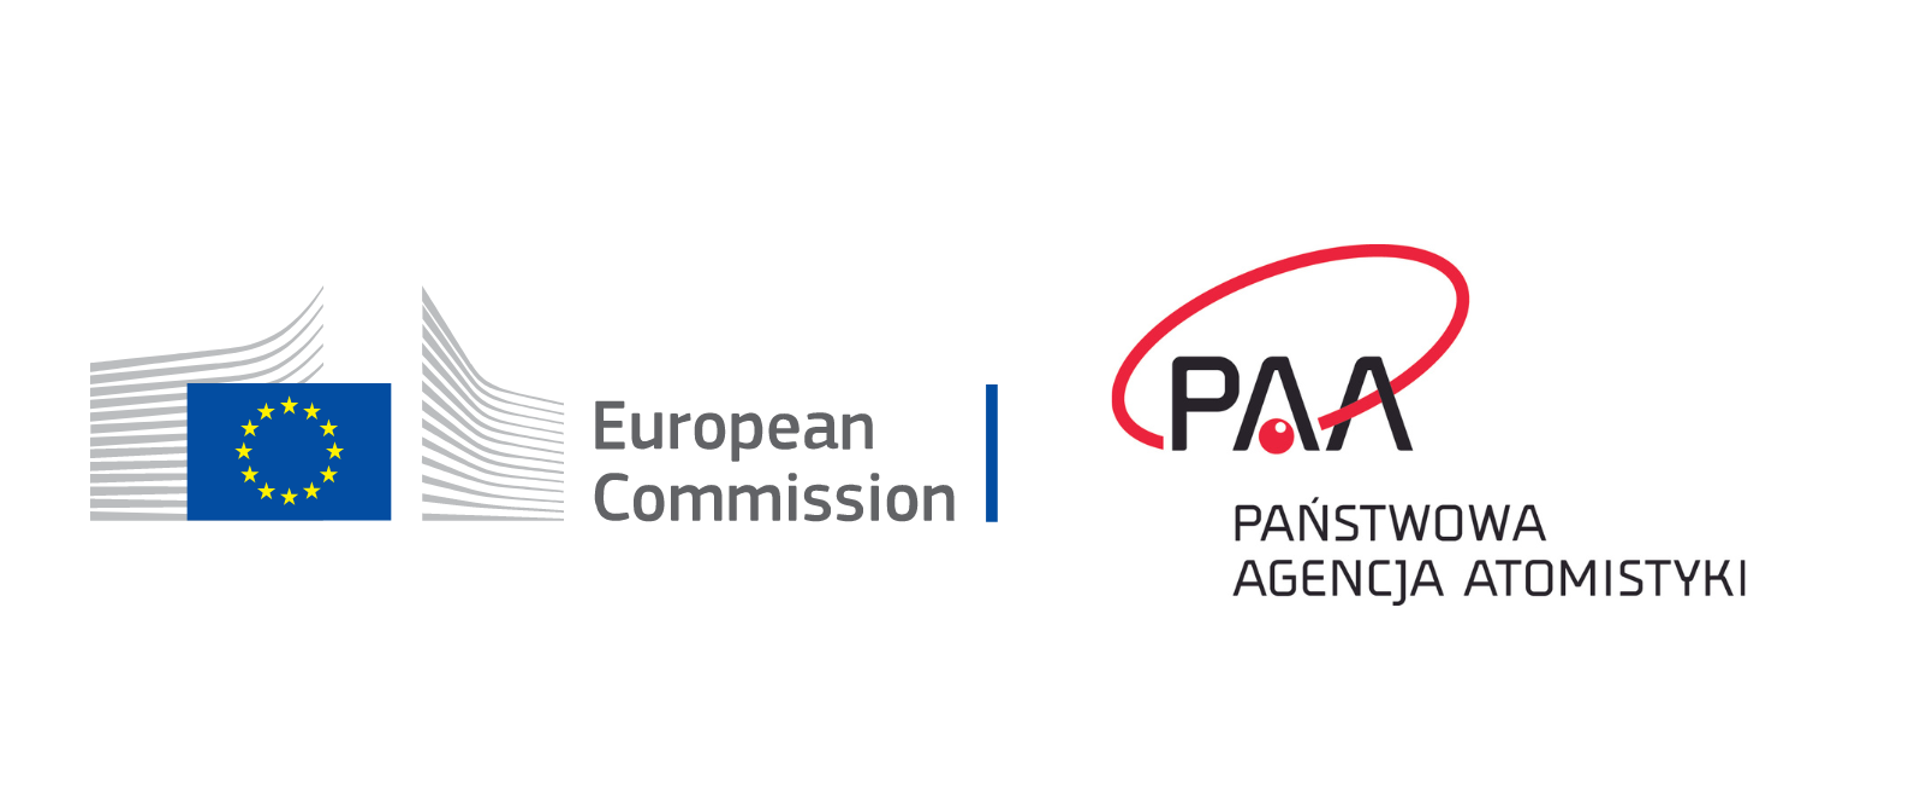 Logotypy Komisji Europejskiej i PAA